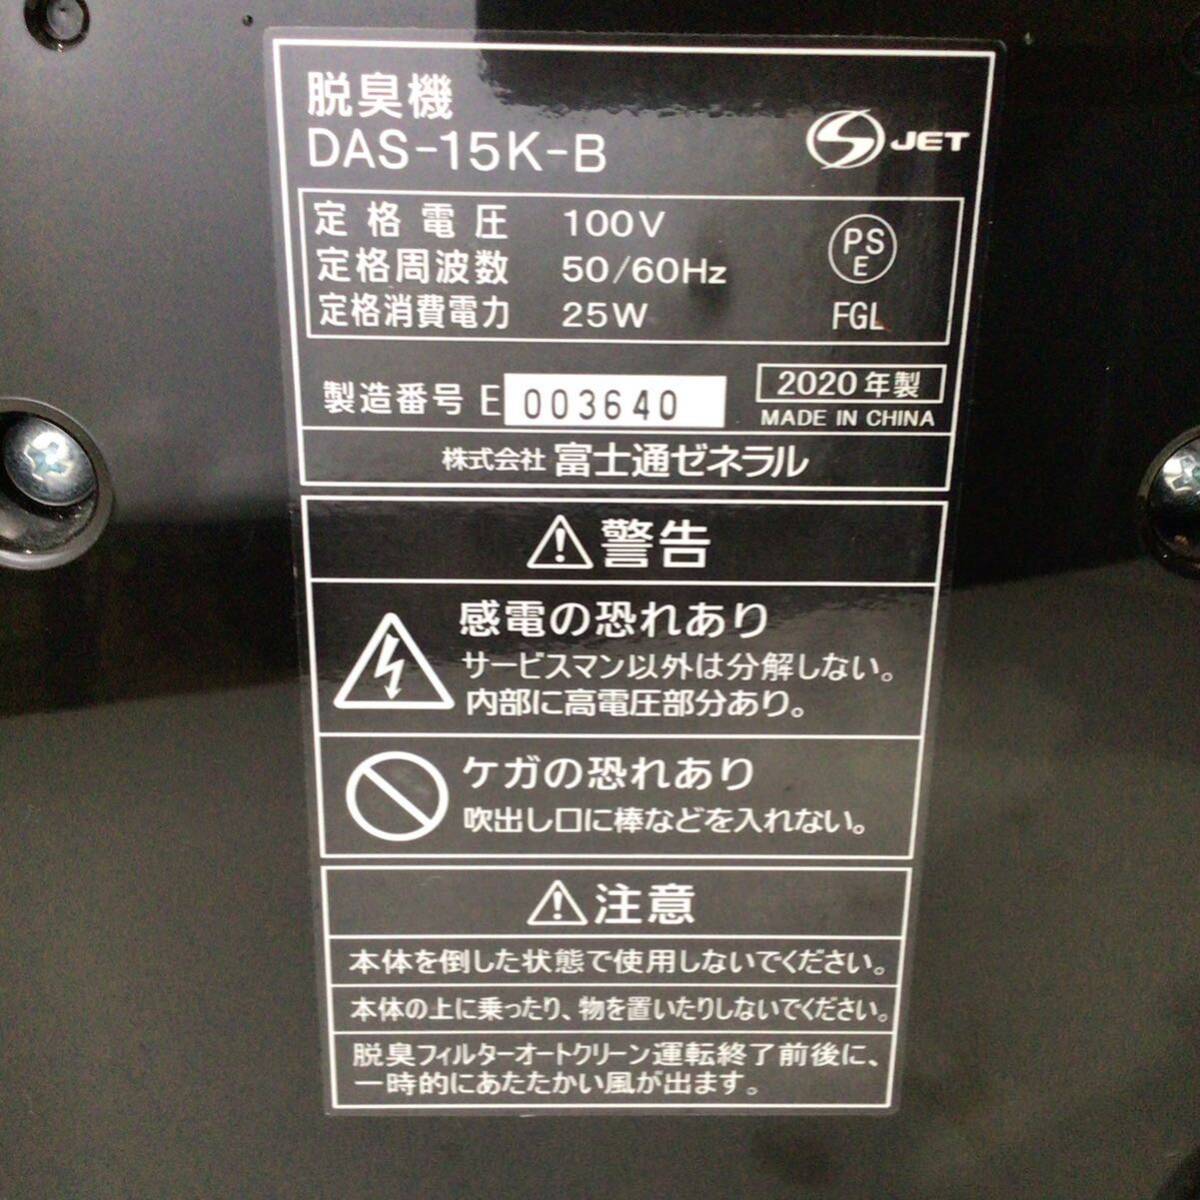 * Fujitsu zenelaru дезодорирующий машина pra z ион DAS-15K-B 2020 год производства рабочее состояние подтверждено черный compact маленький размер дезодорирующий FUJITSU PLAZIONna28-9